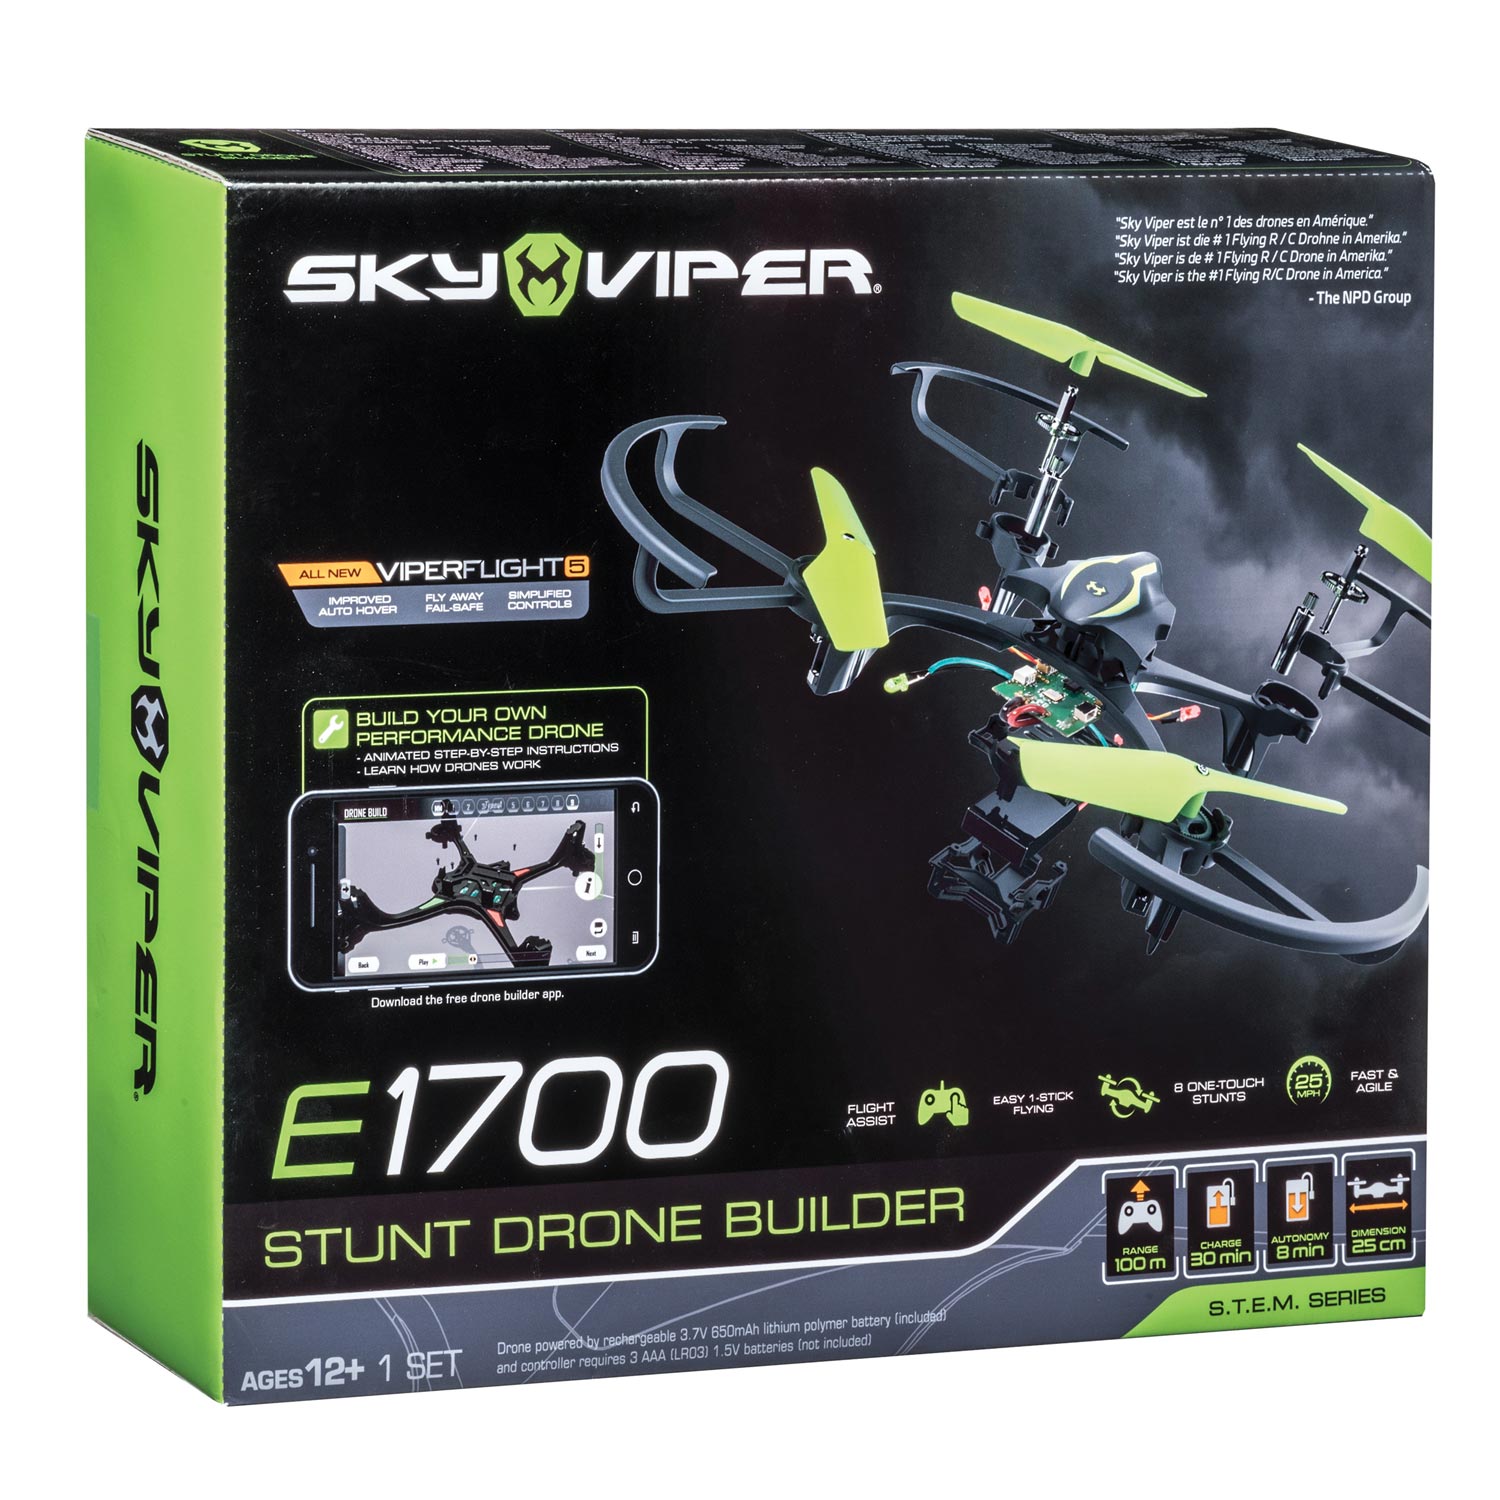 Sky Viper Stunt Drone Builder